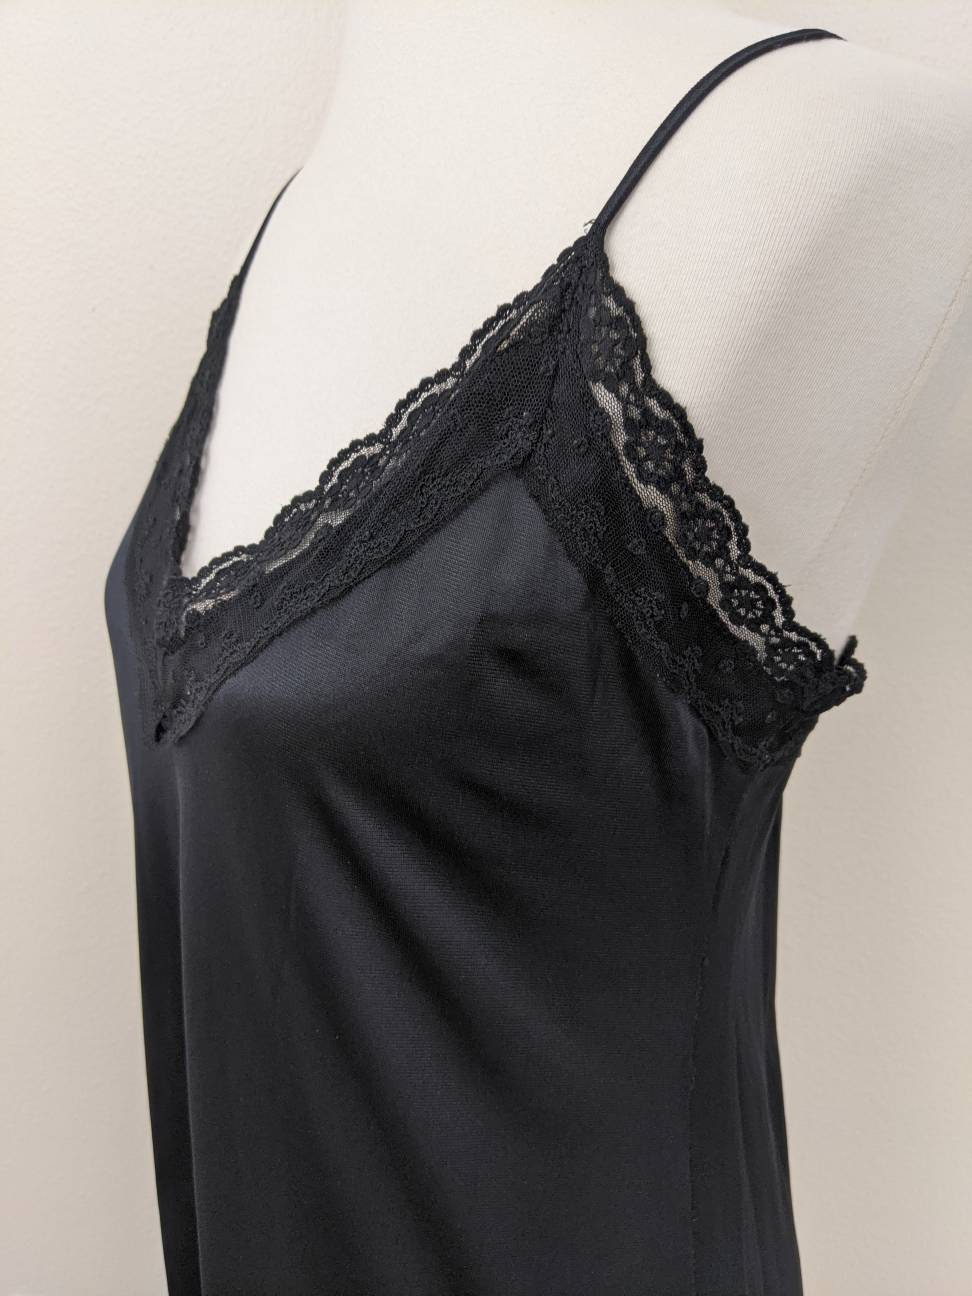 Full Slip Black Nylon Lace Underdress Gift for Her | Etsy